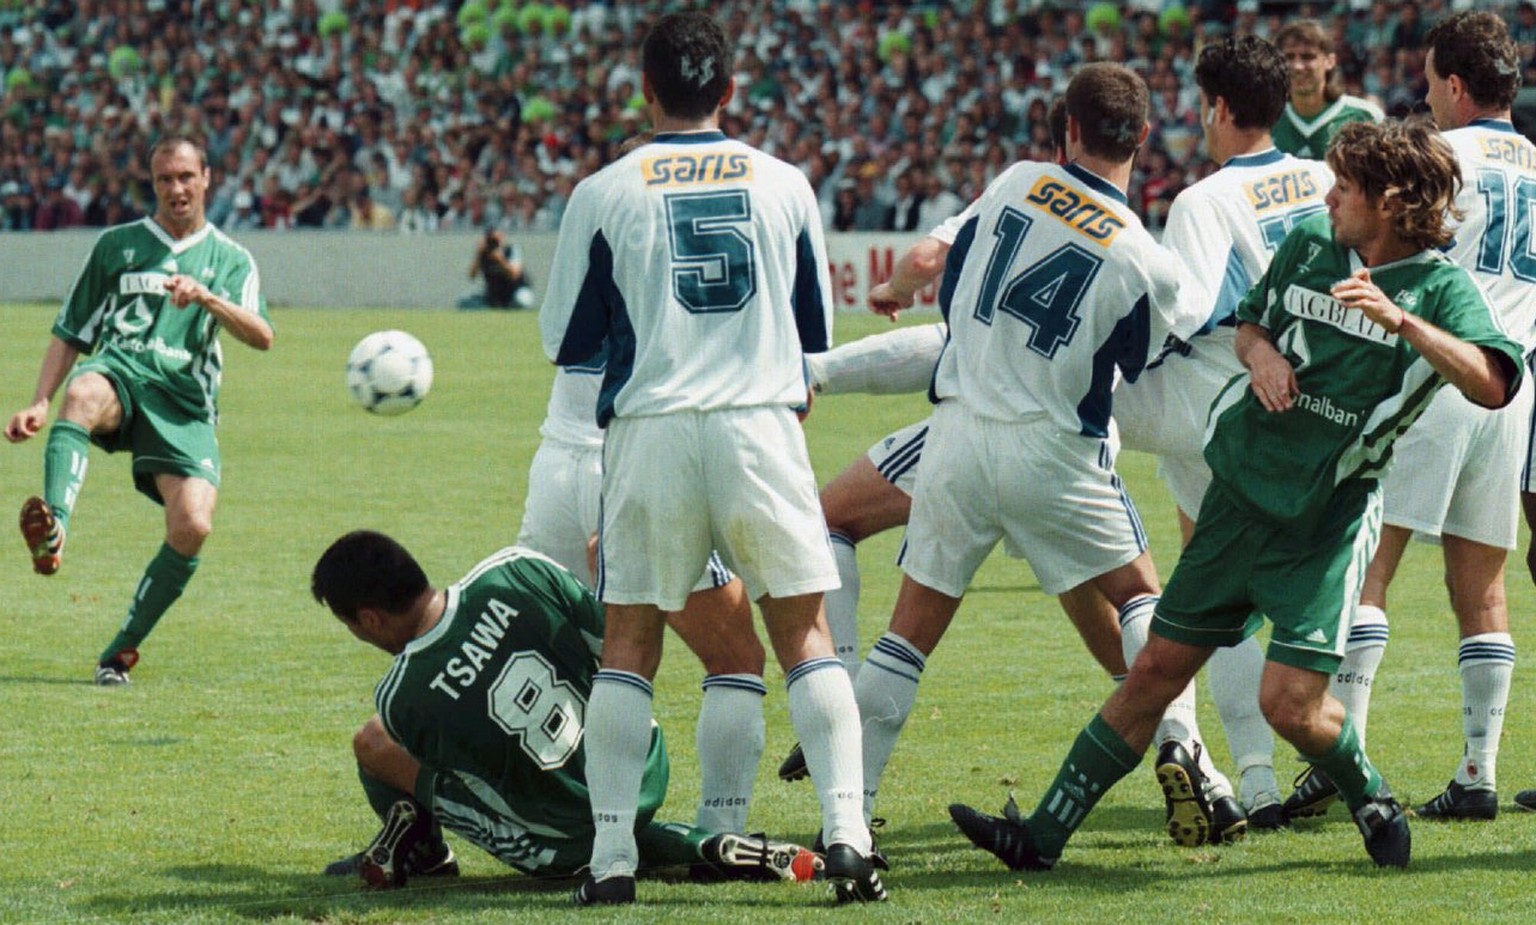 Edwin Vurens schiesst im Cupfinal 1998 das 1:0. Später erzielt er das 2:0, verschiesst dann einen Penalty und der FCSG verliert gegen Lausanne im Penaltyschiessen.